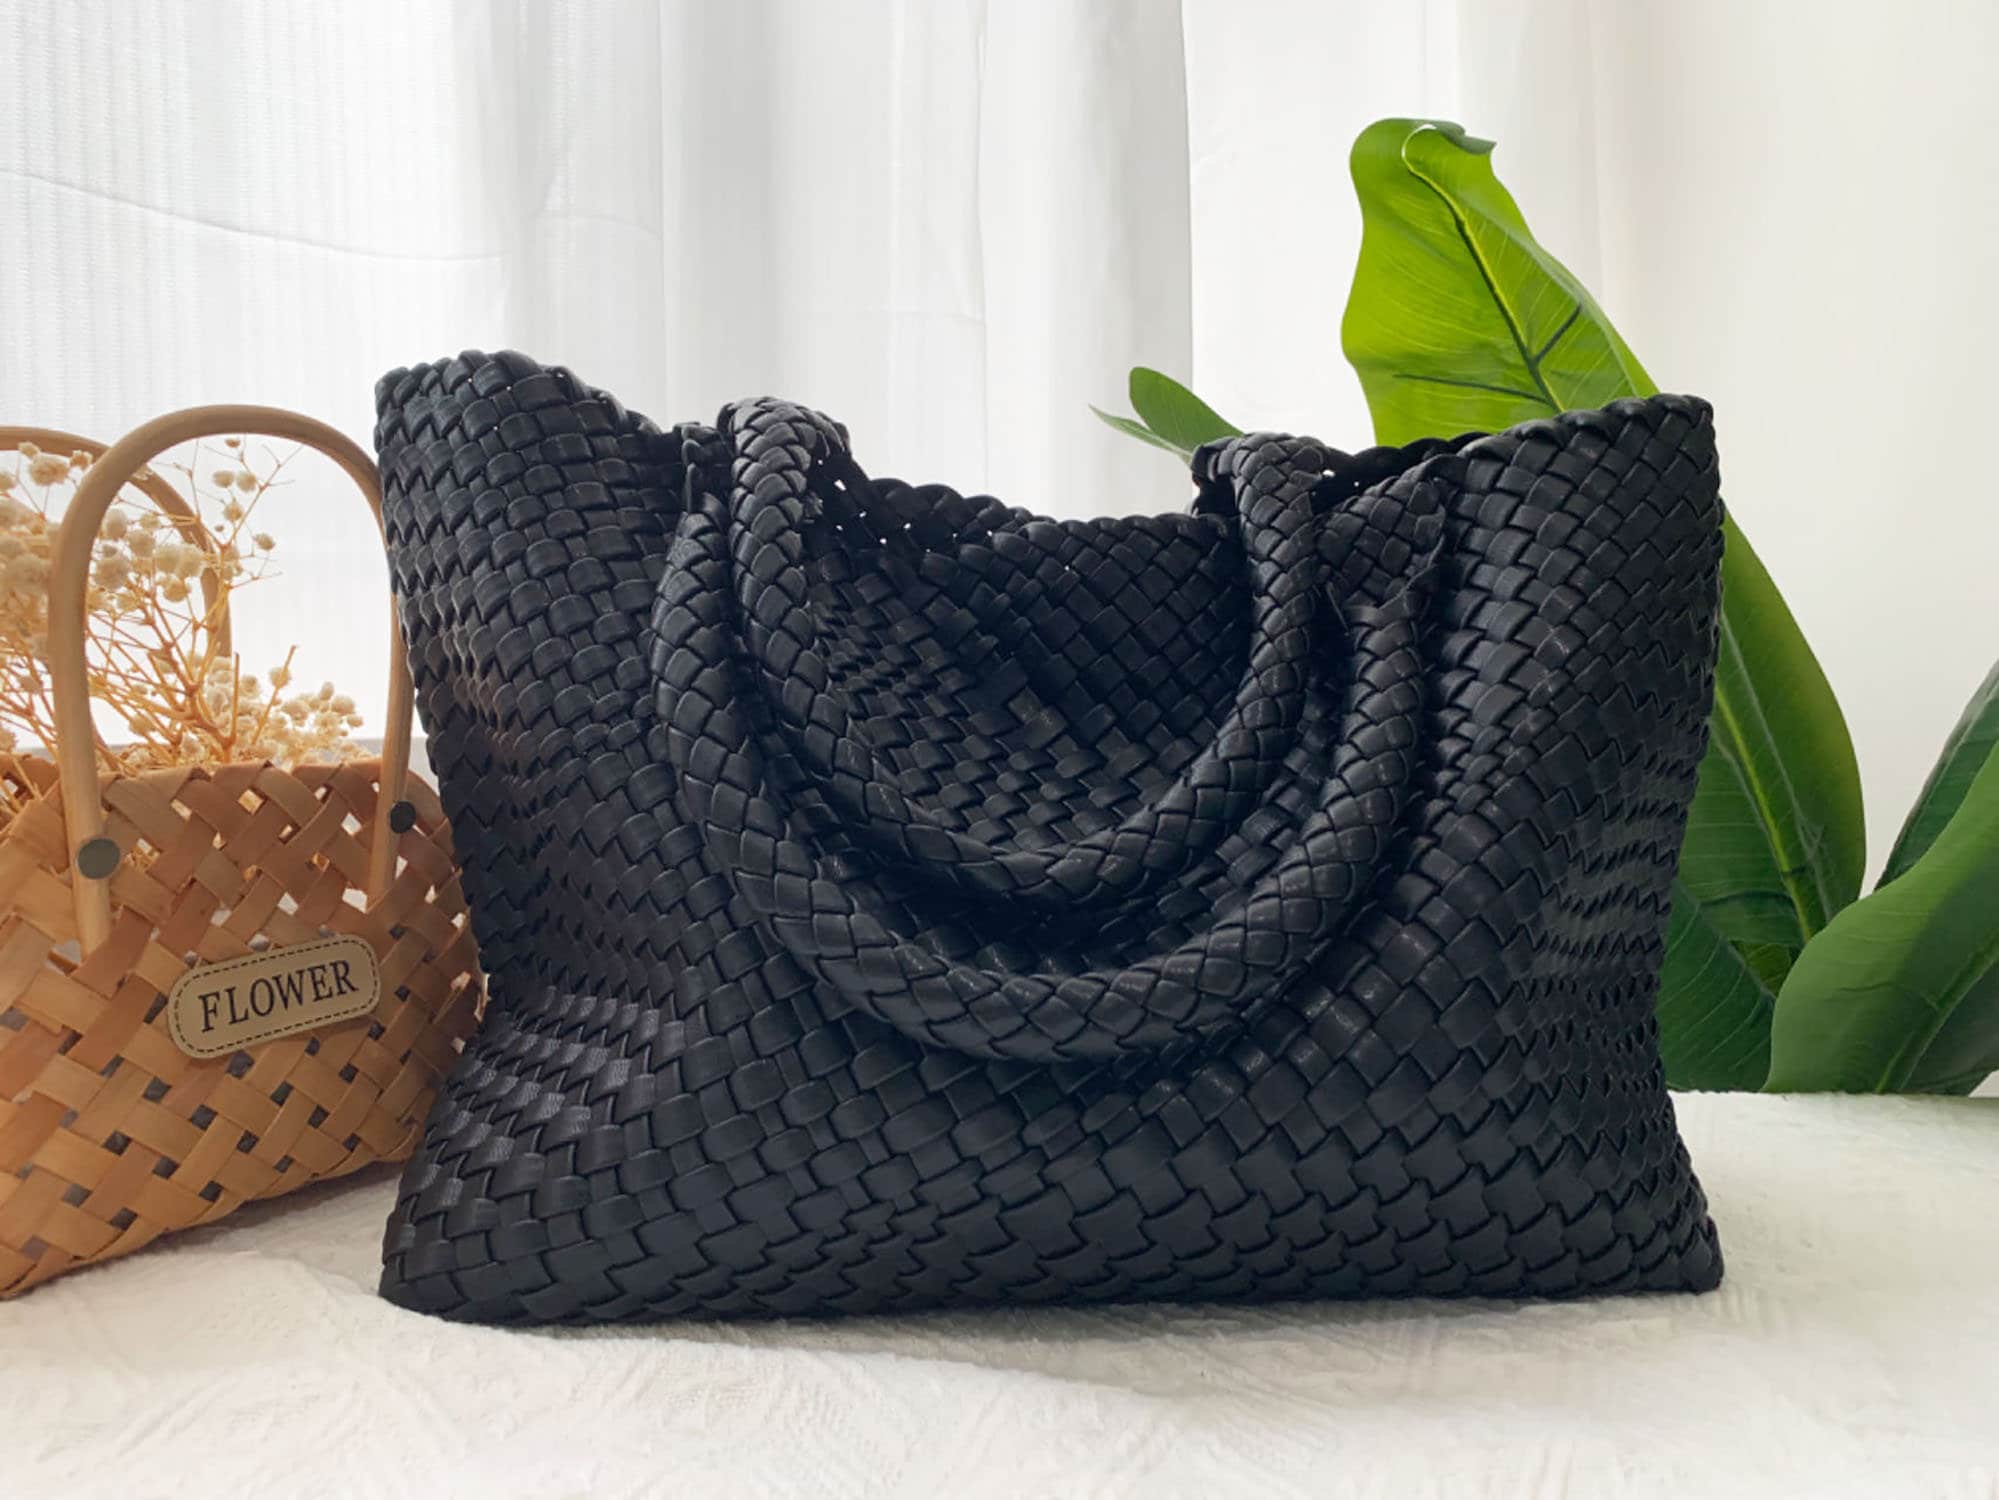 Courrèges - Authenticated Handbag - Black Plain for Women, Good Condition